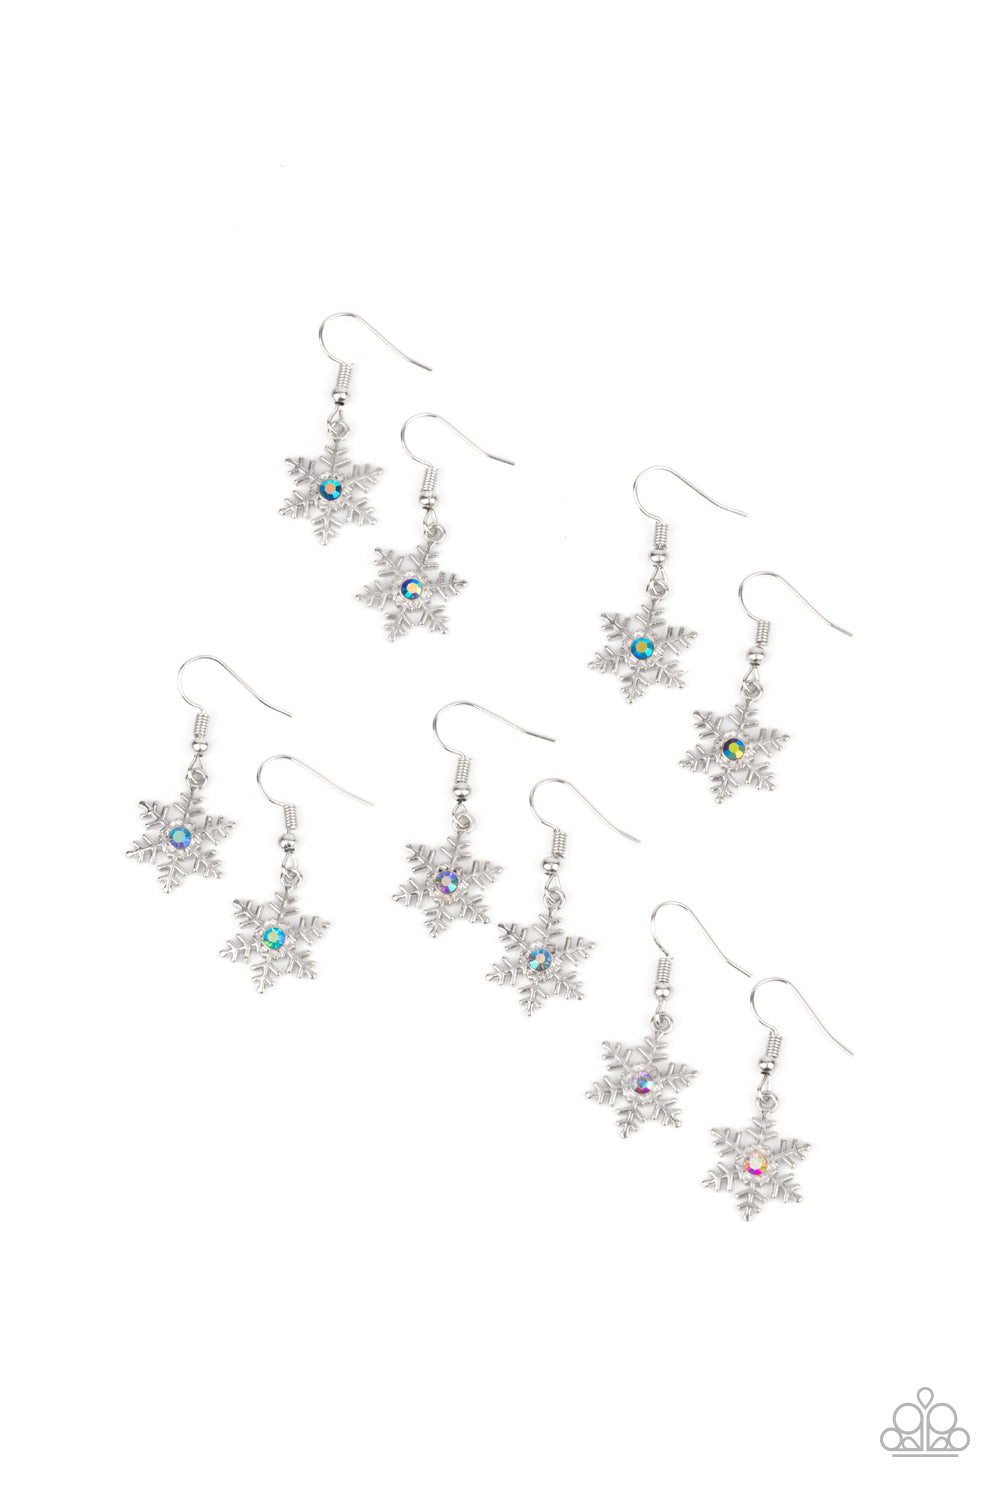 Starlet Shimmer Festive Winter Snowflake Earrings - 5 pack